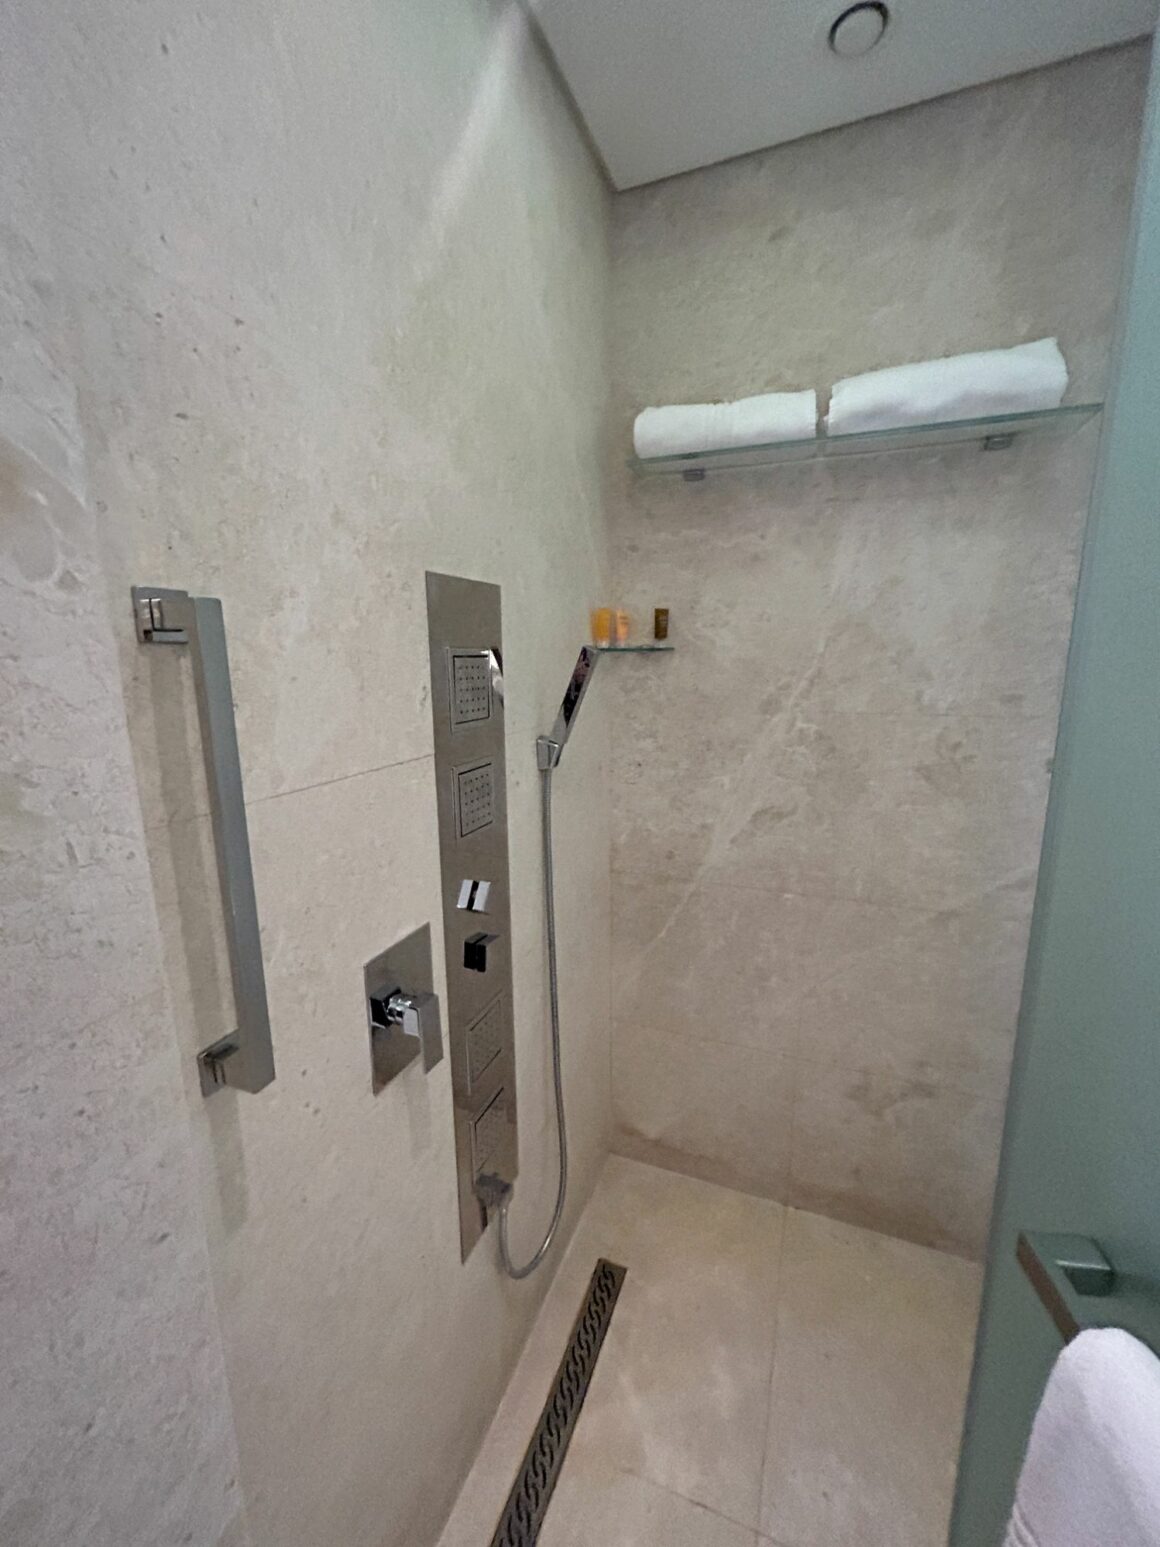  Le Meridien Hotel & Conference Centre Dubai Shower Room Review